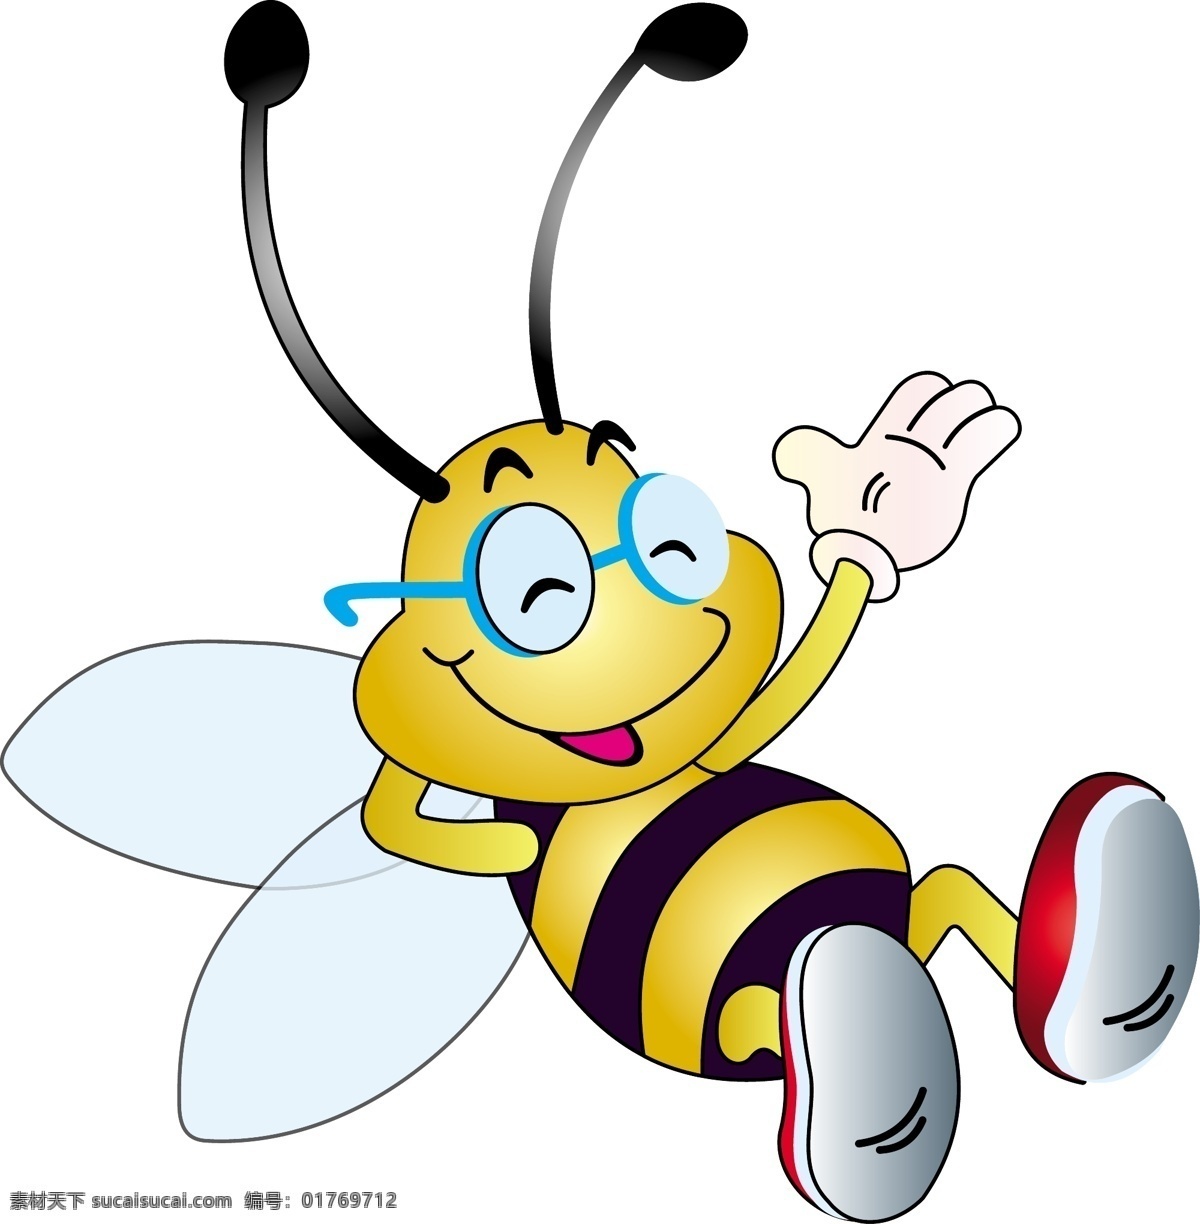 卡通 卡通蜜蜂 昆虫 蜜蜂 其他矢量 生物世界 矢量素材 矢量图库 矢量 模板下载 其他矢量图